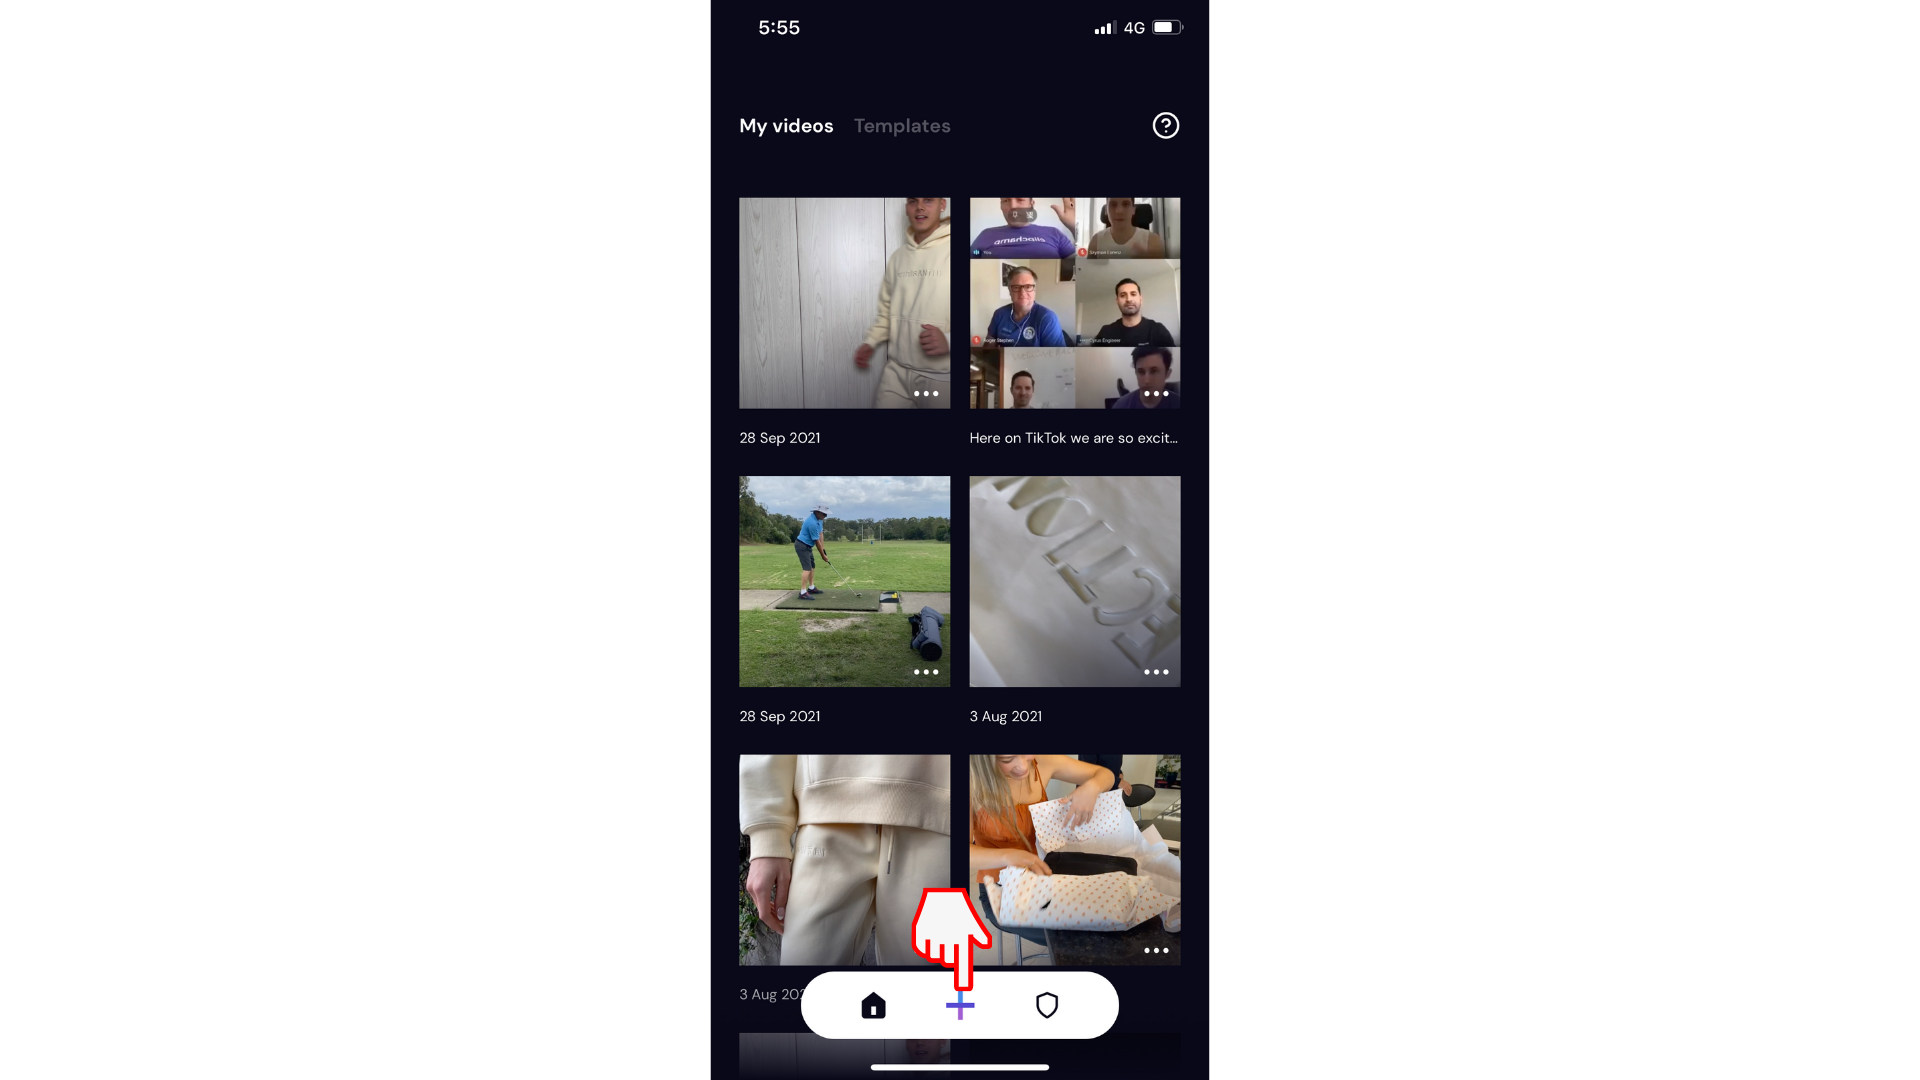 משתמש יוצר סרטון וידאו חדש באפליקציה למכשירים ניידים